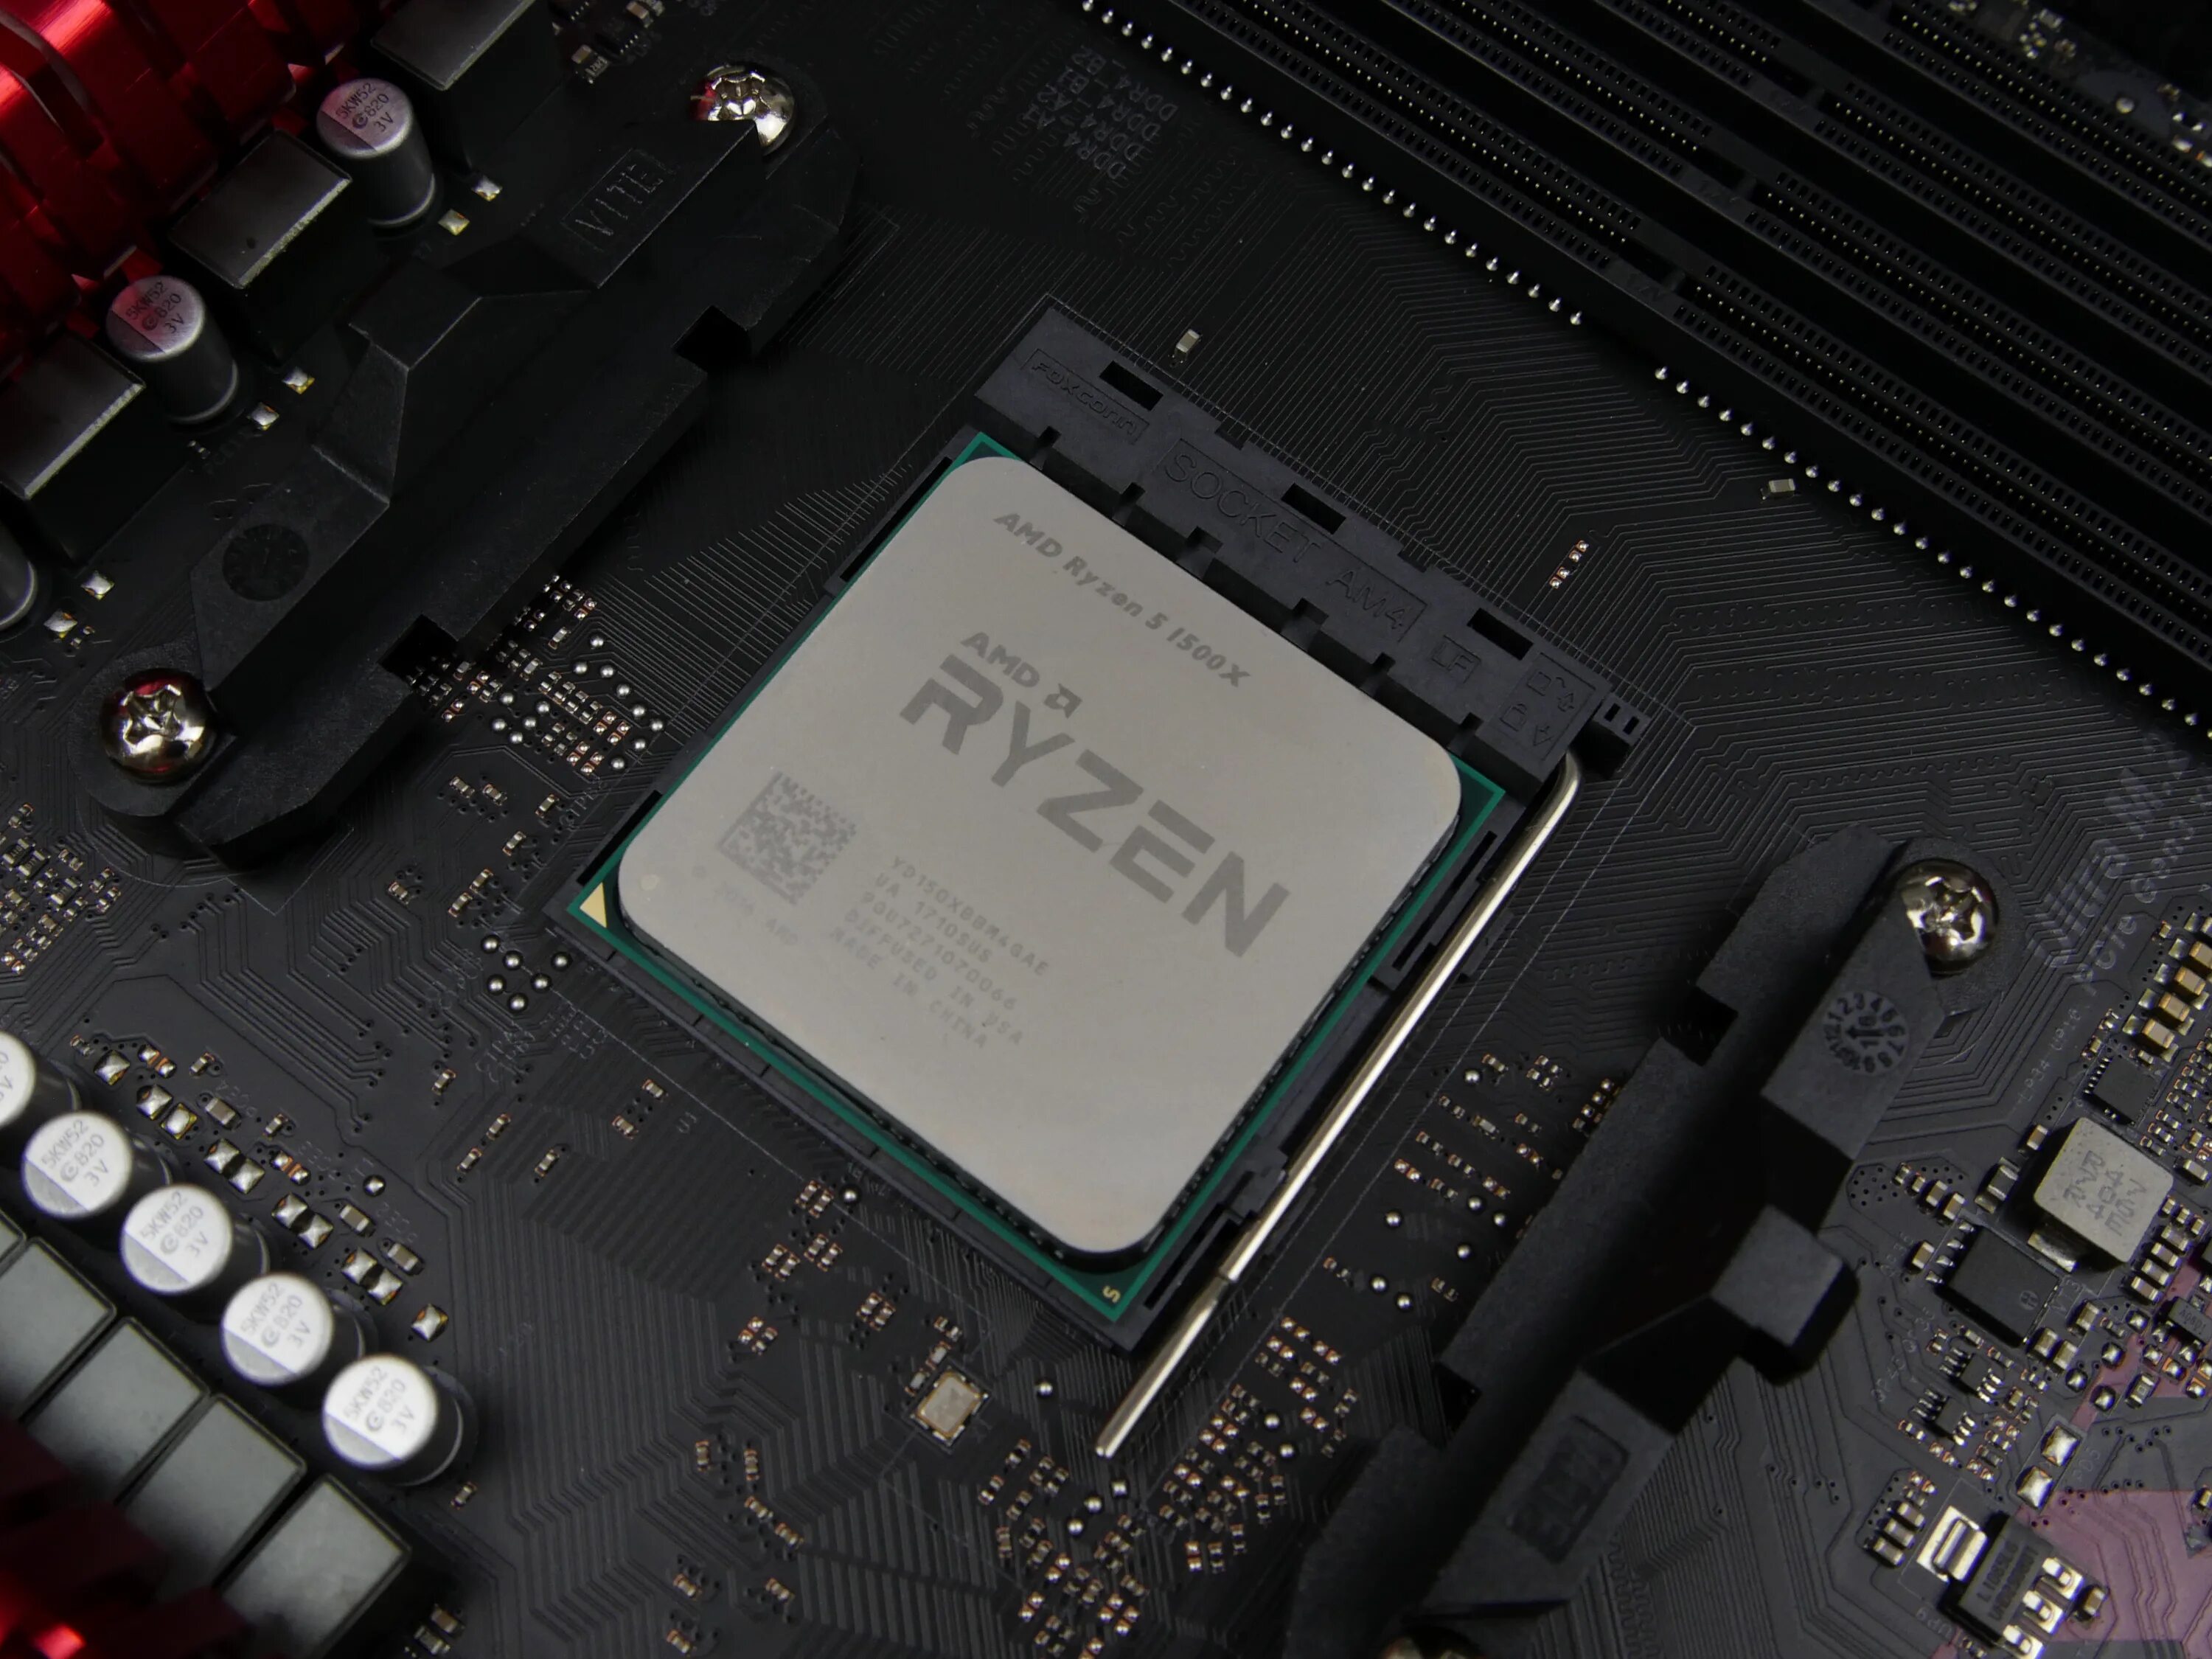 1500х Ryzen. Ryzen 5 1500. AMD Ryzen 5 1500x Quad-Core Processor 3.50 GHZ. Процессор AMD Ryzen 5 1500x (yd150xbbaebox). Райзен какой сокет